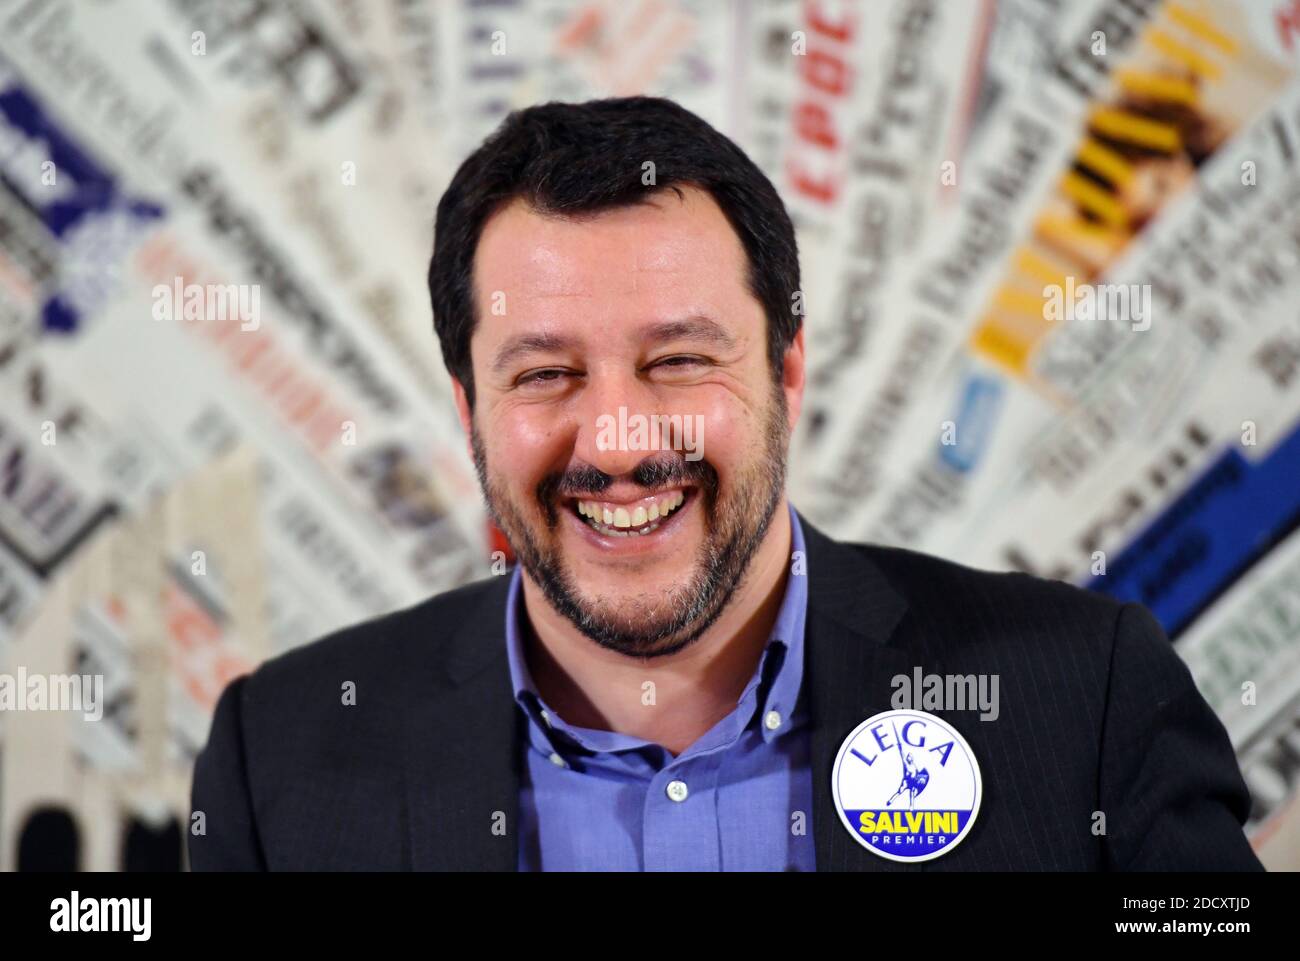 Leader del partito italiano di estrema destra Lega Nord (Lega Nord) Matteo  Salvini partecipa a una conferenza stampa presso l'Associazione della Stampa  estera di Roma, Italia, il 22 febbraio 2018. Salvini e